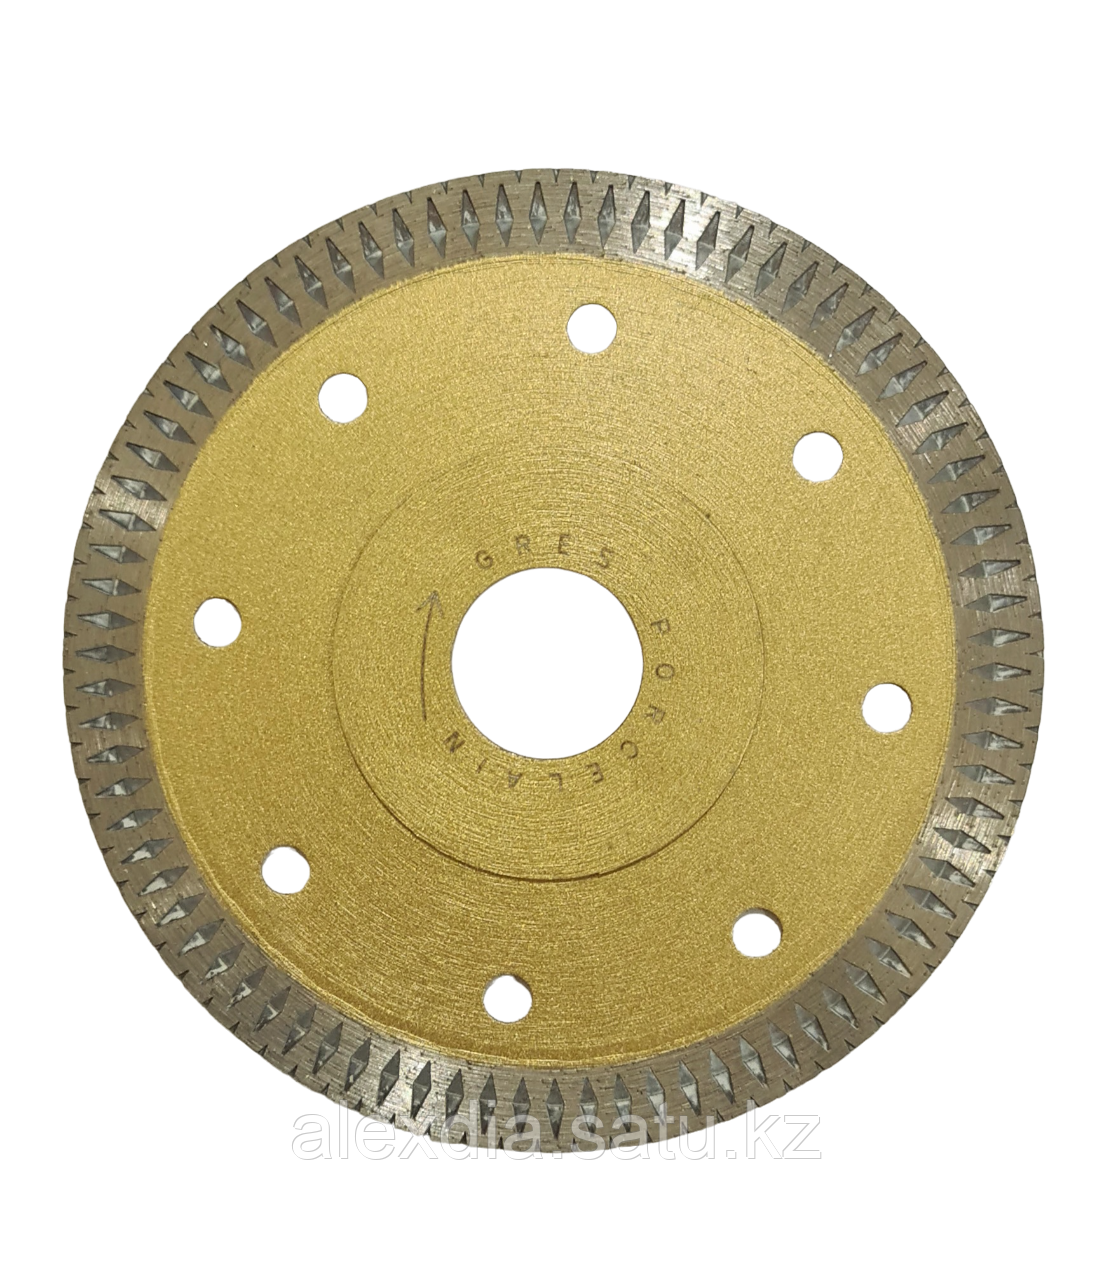 Ультратонкий алмазный отрезной диск для резки кафельной и др. плиток 115 мм, ALEXDIA